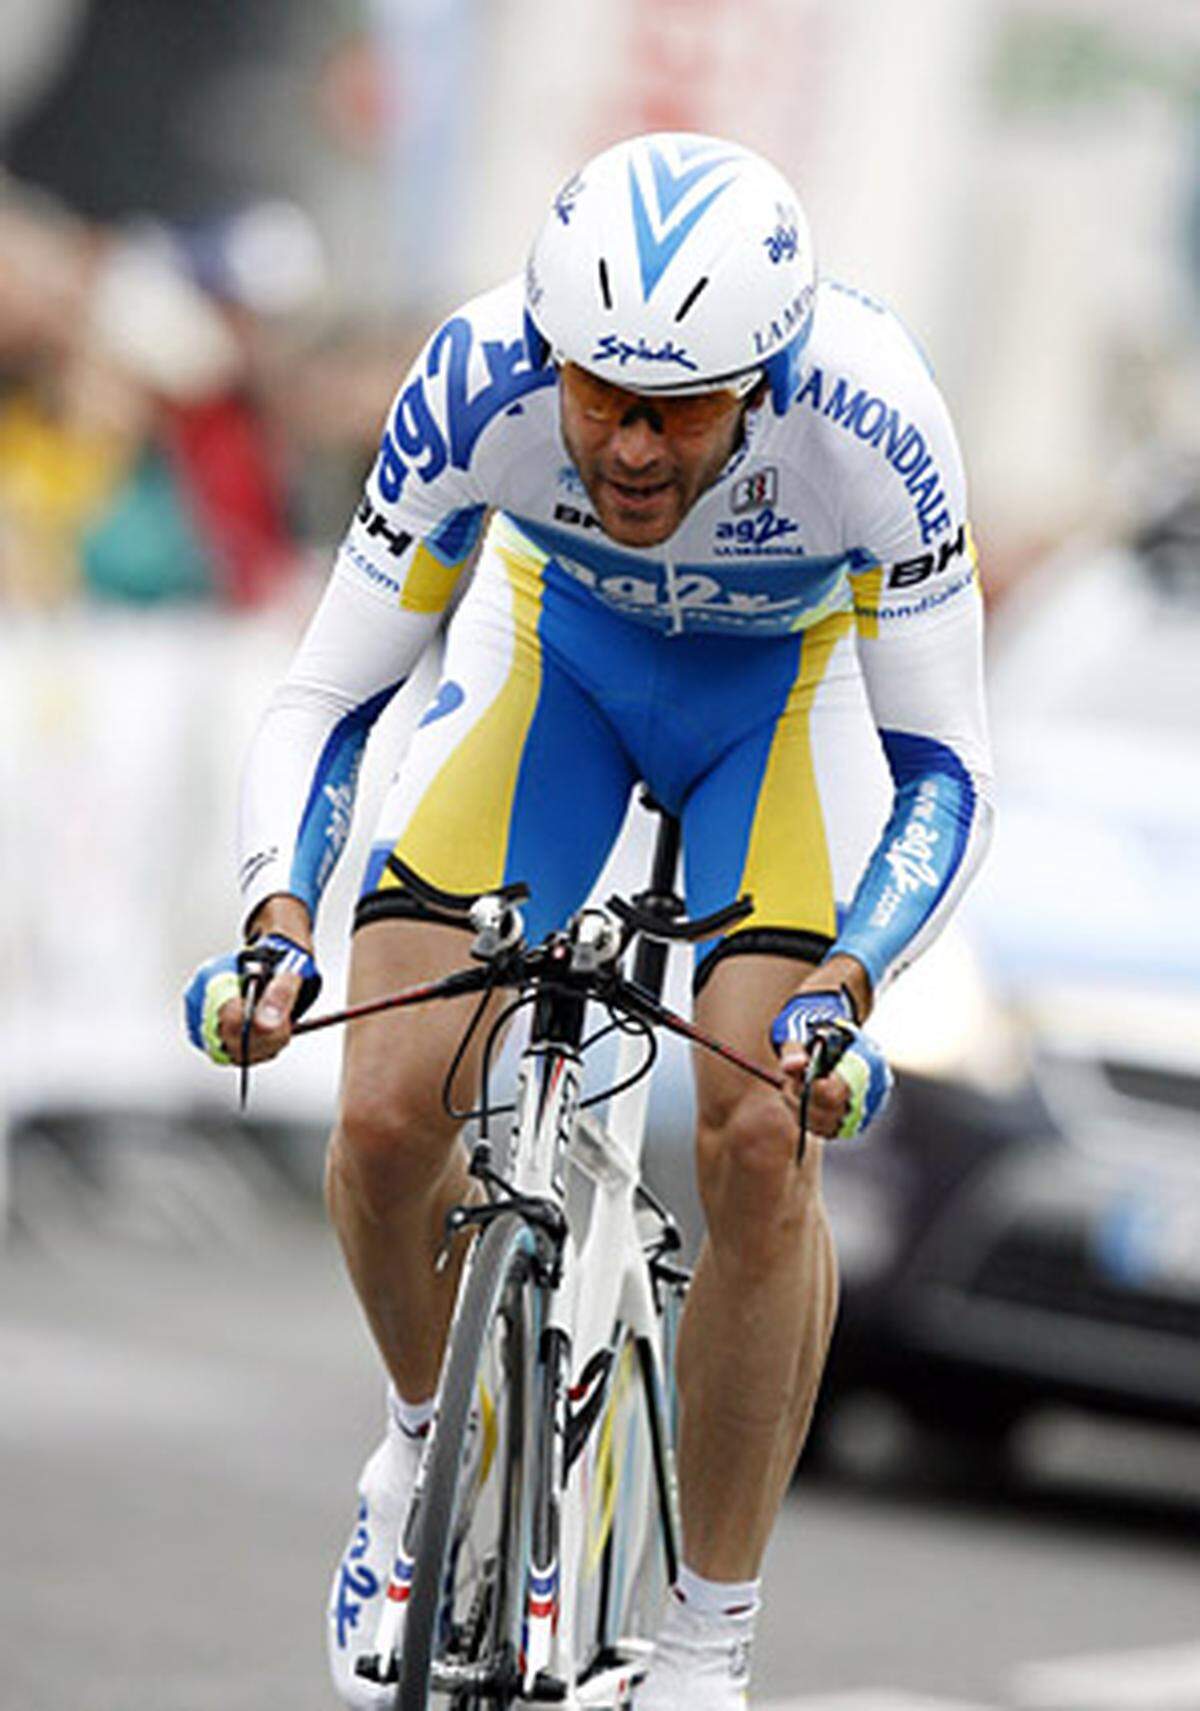 Land: Frankreich  Budget: 7,3 Millionen Euro  Bisherige Tour-Bilanz: Zehn Teilnahmen, acht Etappensiege  Wichtigste Fahrer 2009: José Luis Arrieta (ESP), Stéphane Goubert (FRA/Bild), Cyril Dessel (FRA)